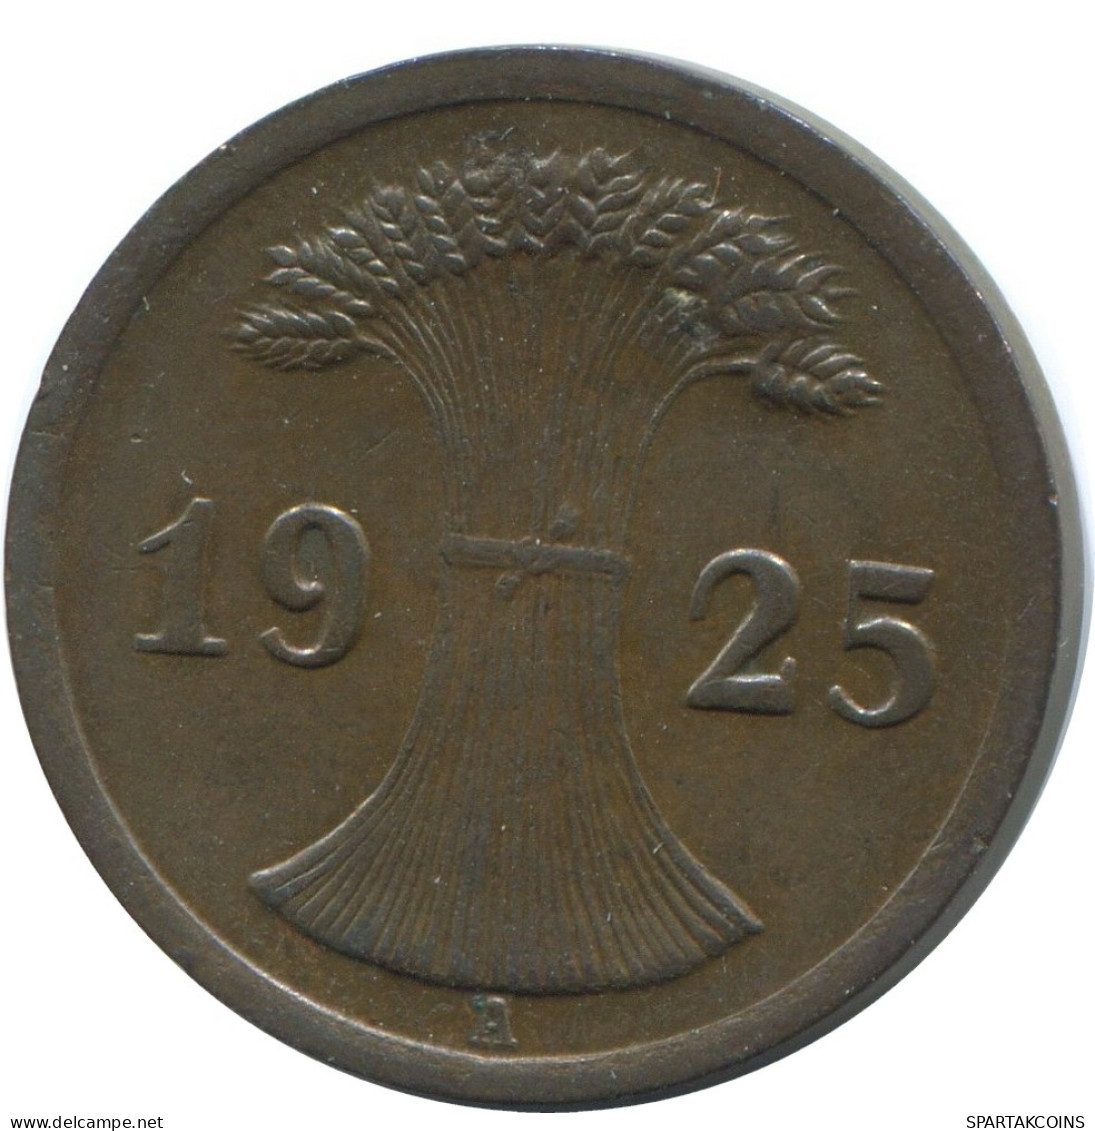 2 REICHSPFENNIG 1925 A GERMANY Coin #AE281.U - 2 Renten- & 2 Reichspfennig